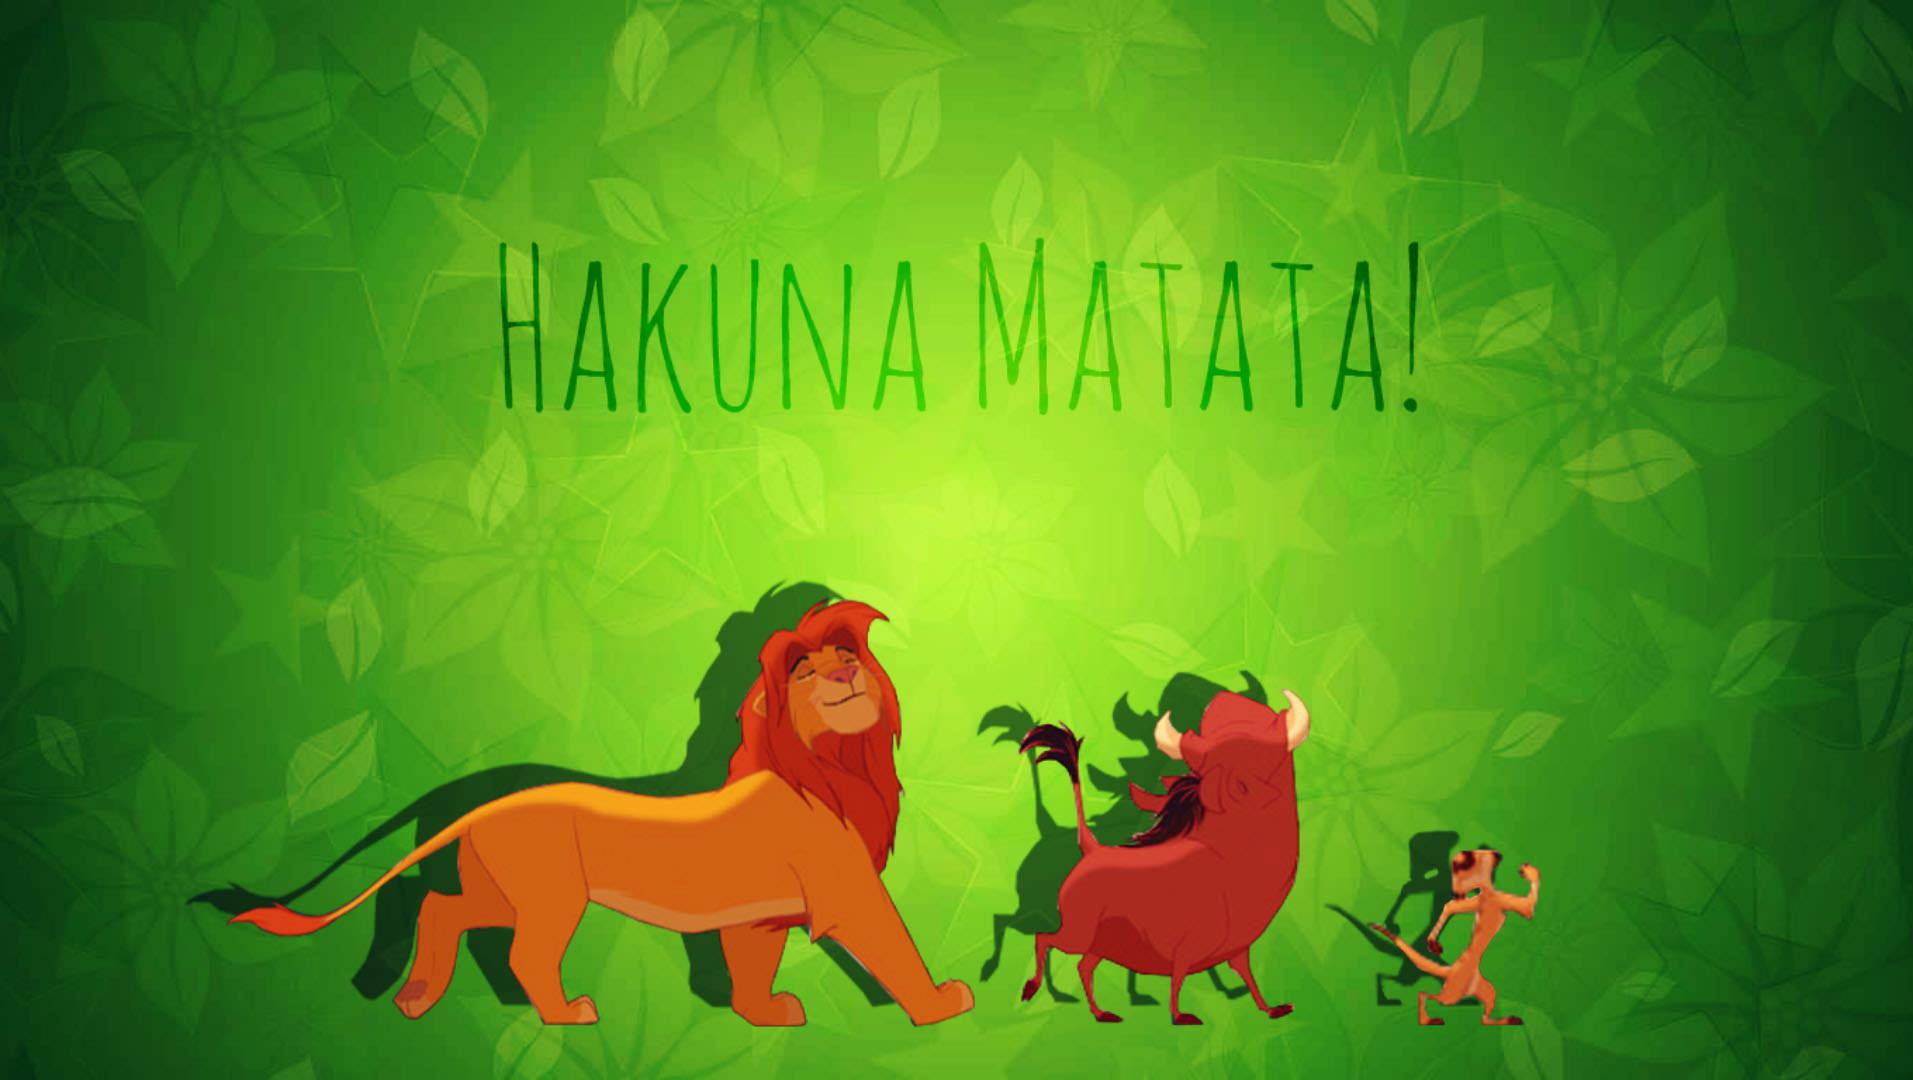 Lion King Hakuna Matata Wallpapers - Wallpaper Cave